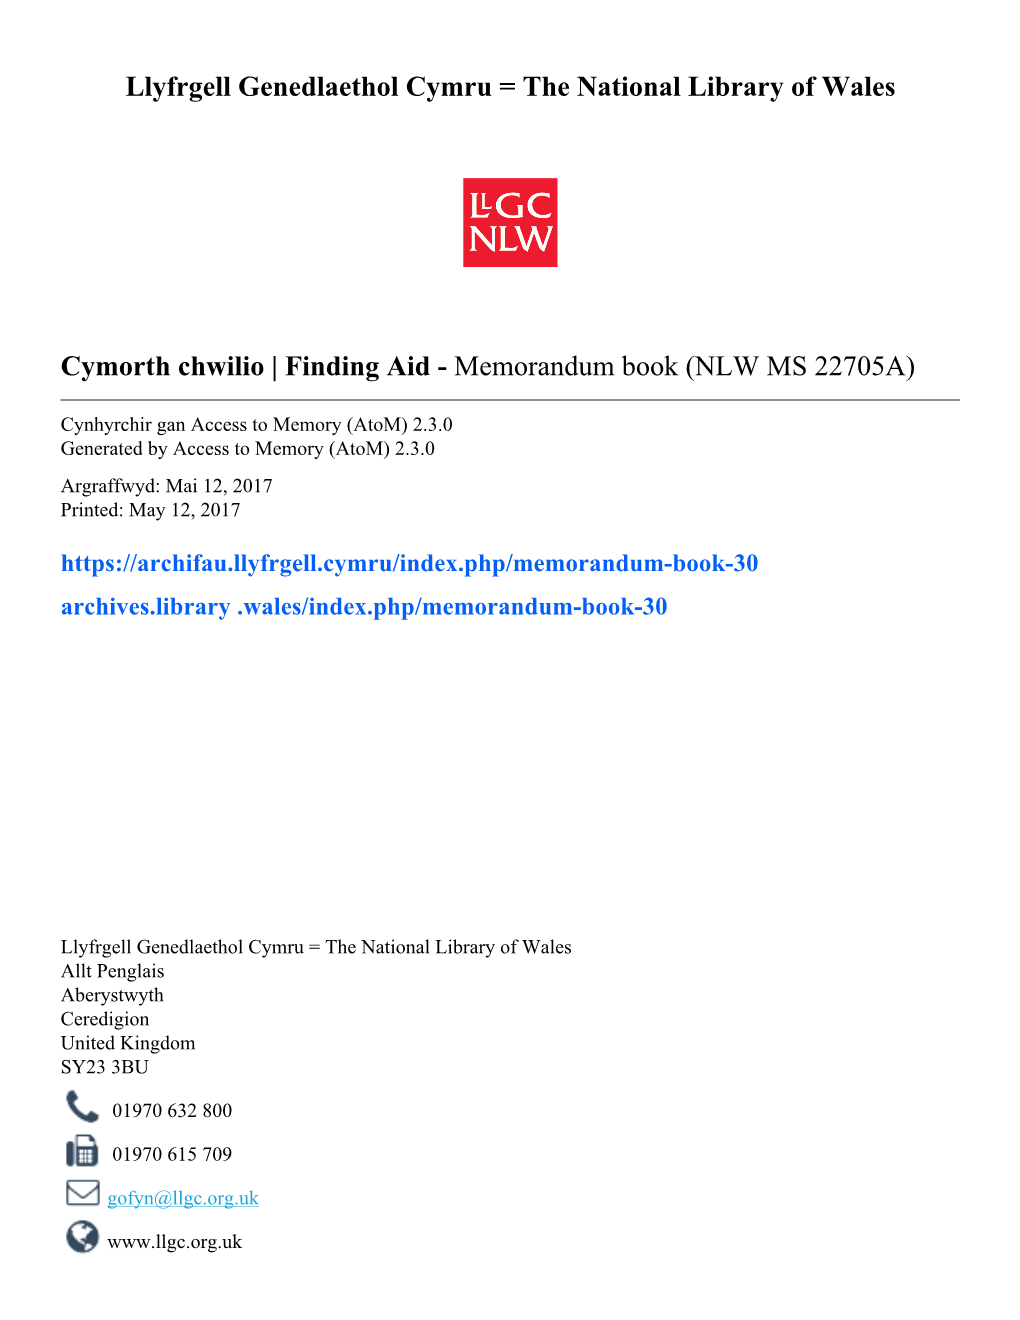 Memorandum Book (NLW MS 22705A)